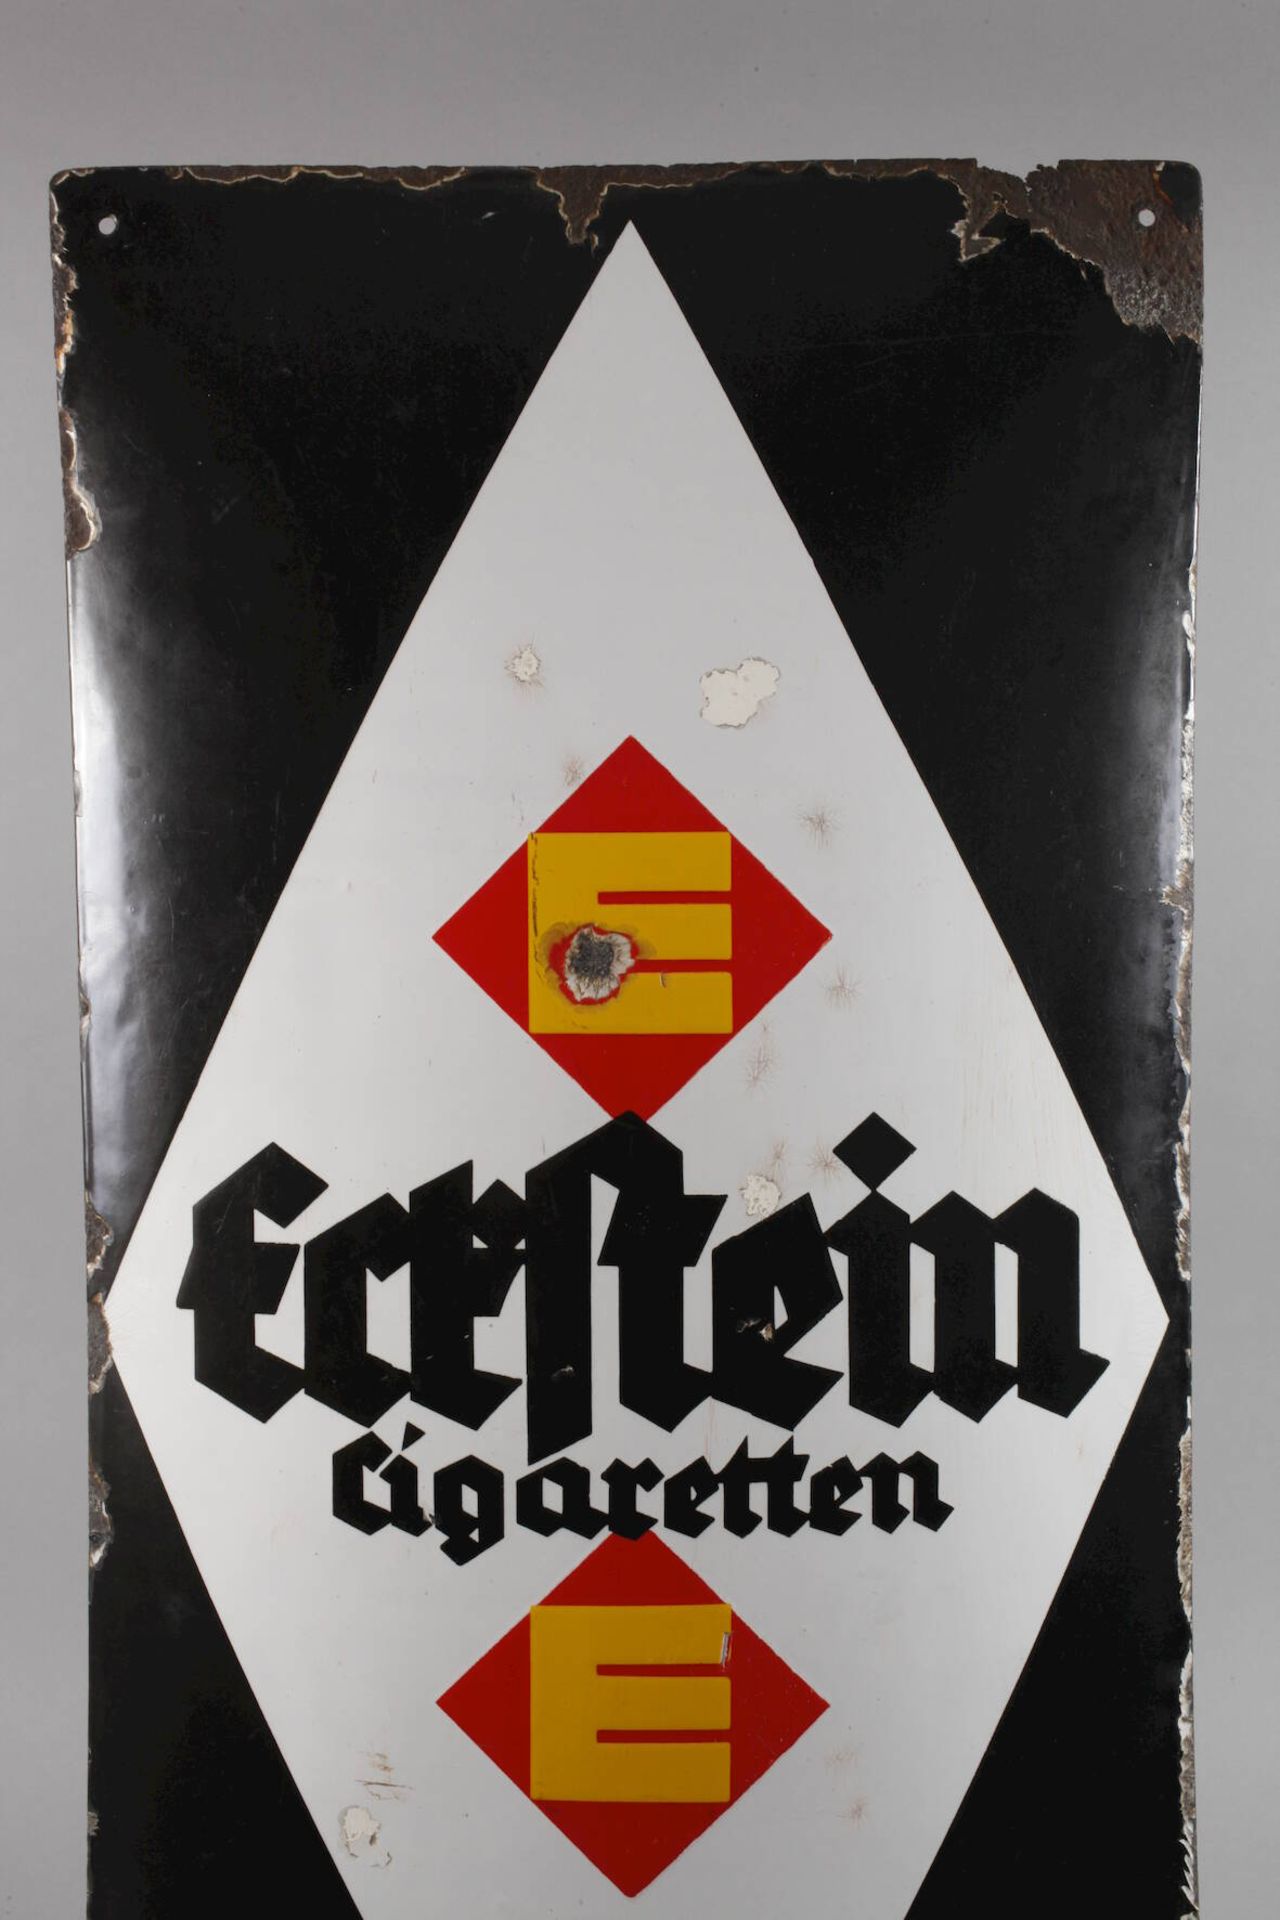 Blechschild Eckstein Zigarettenum 1920, ungemarkt, hochrechteckiges, stark gebauchtes Blechschild, - Bild 2 aus 4